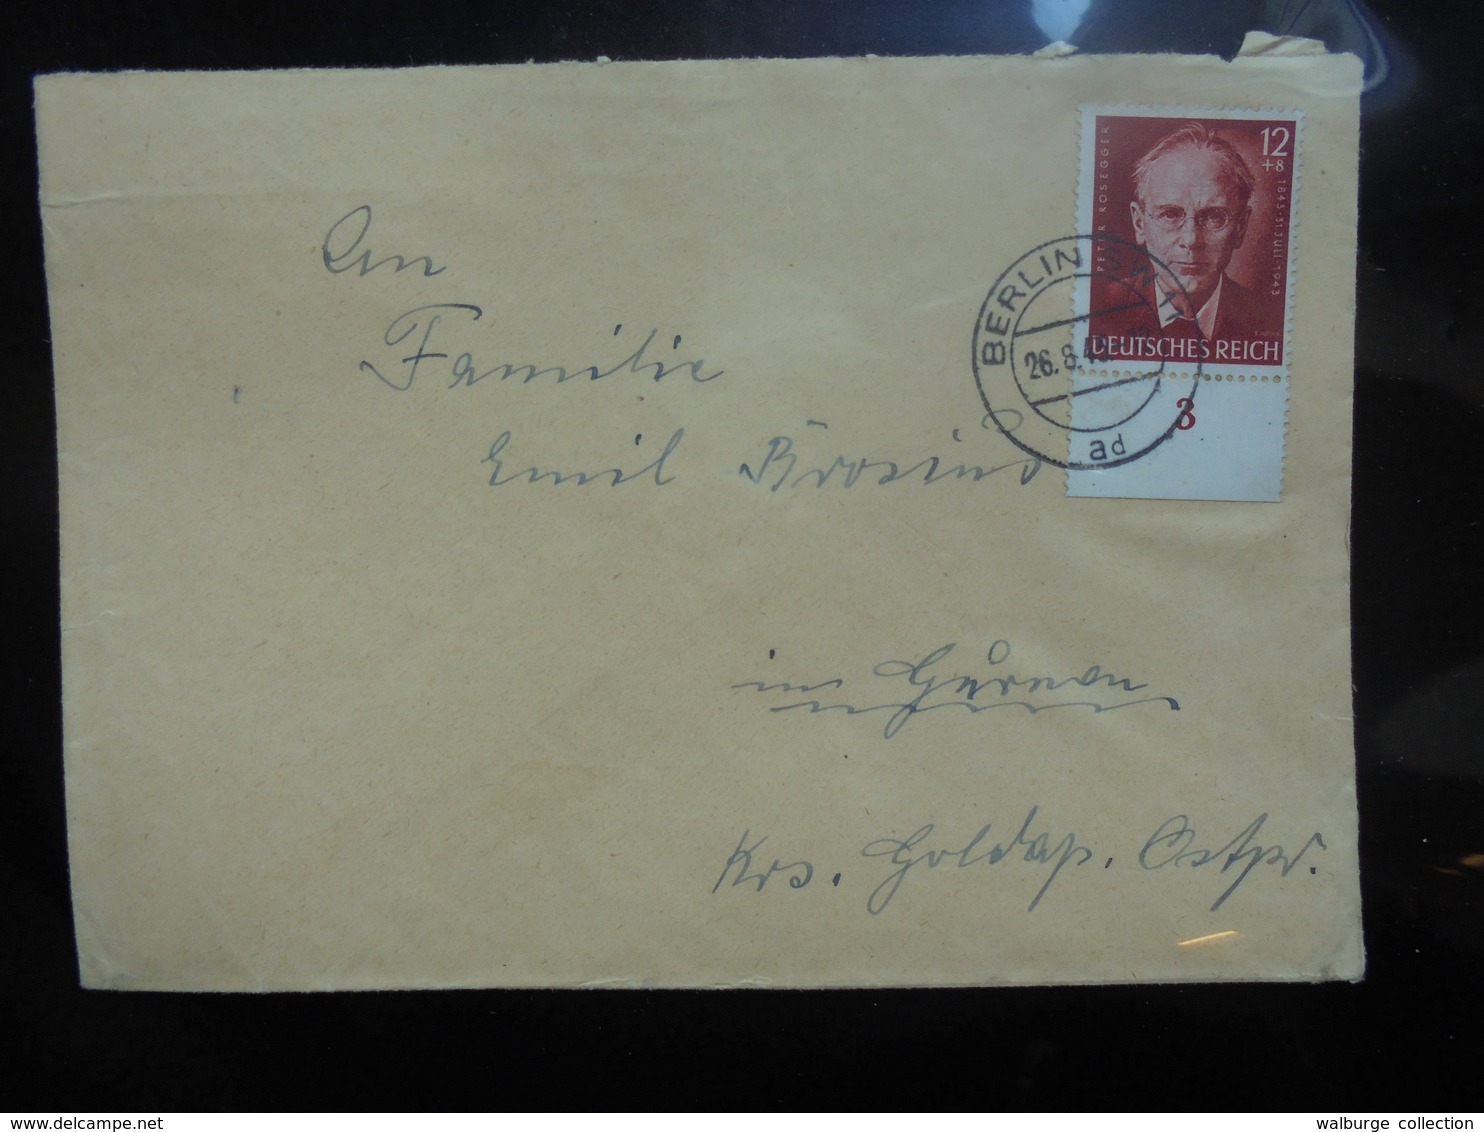 3eme REICH 1943 - Briefe U. Dokumente